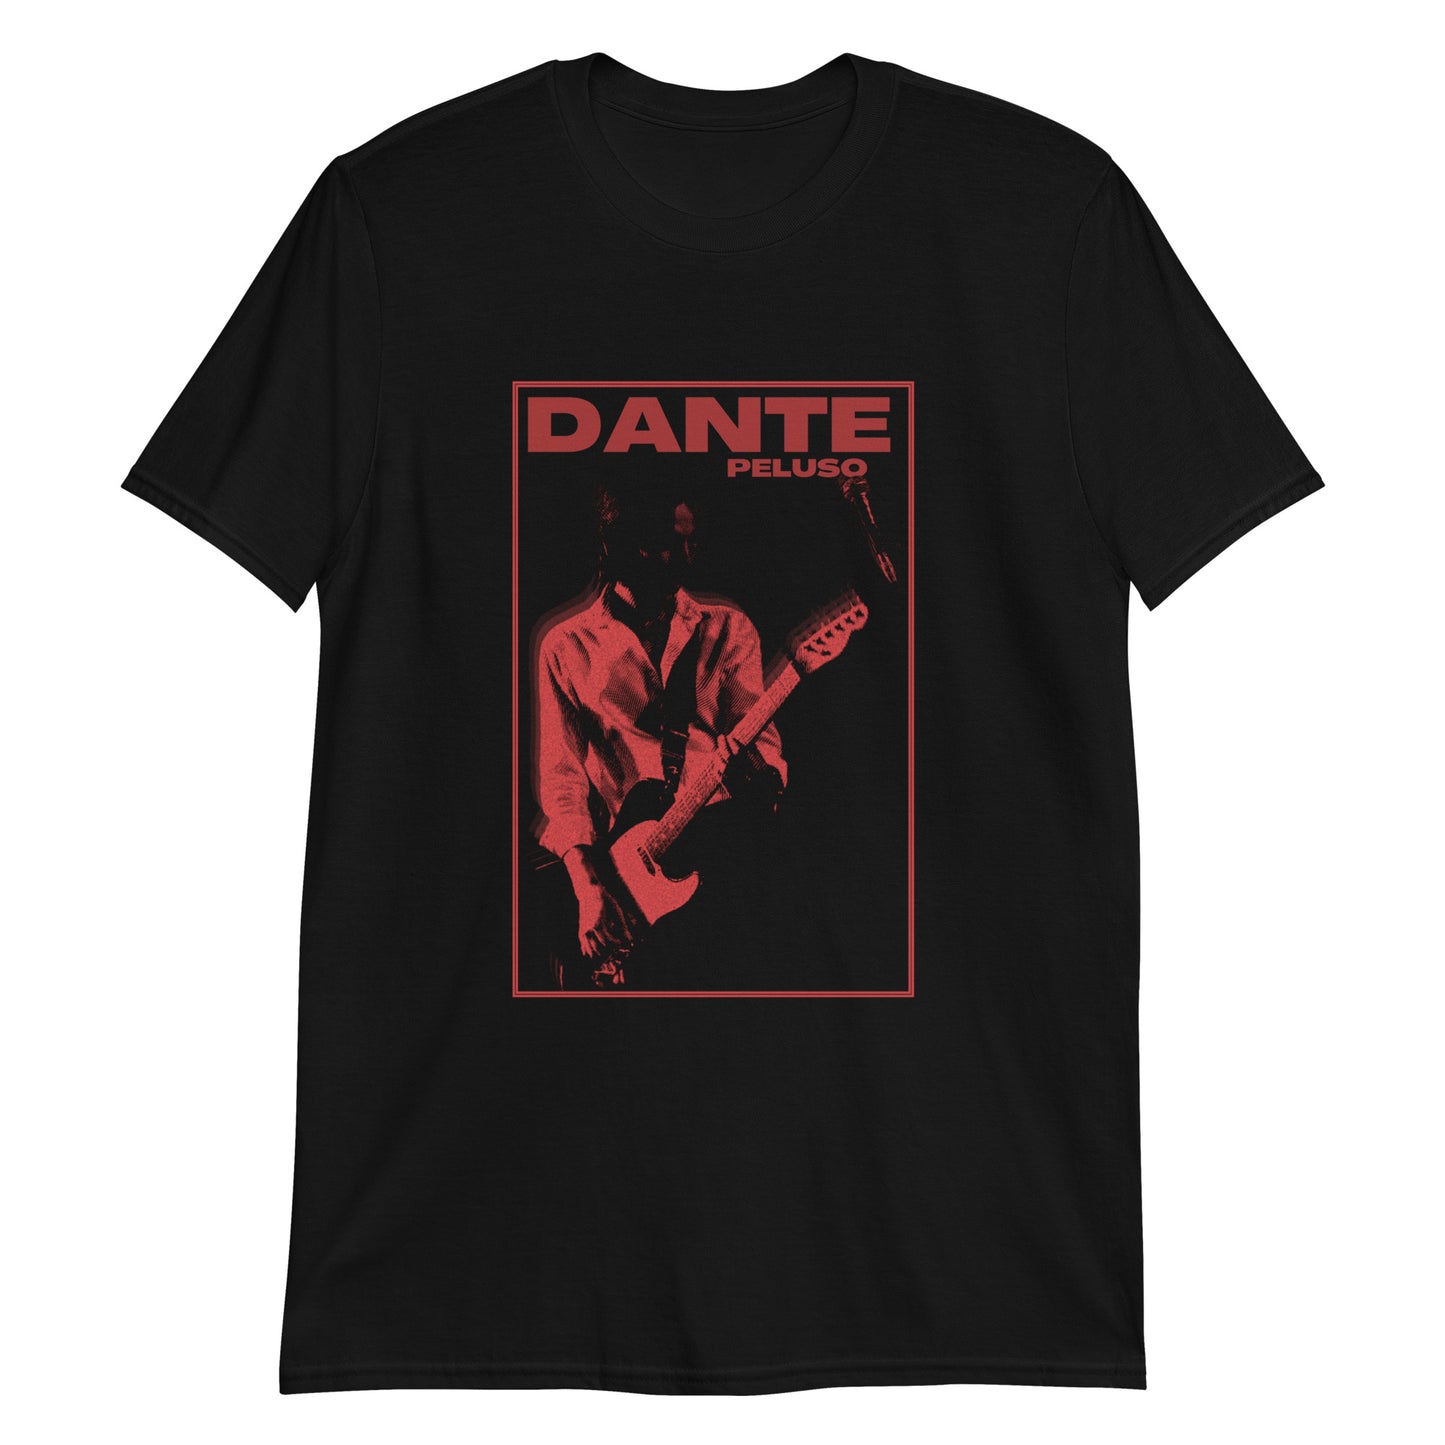 'Dante' Retro Tee Design